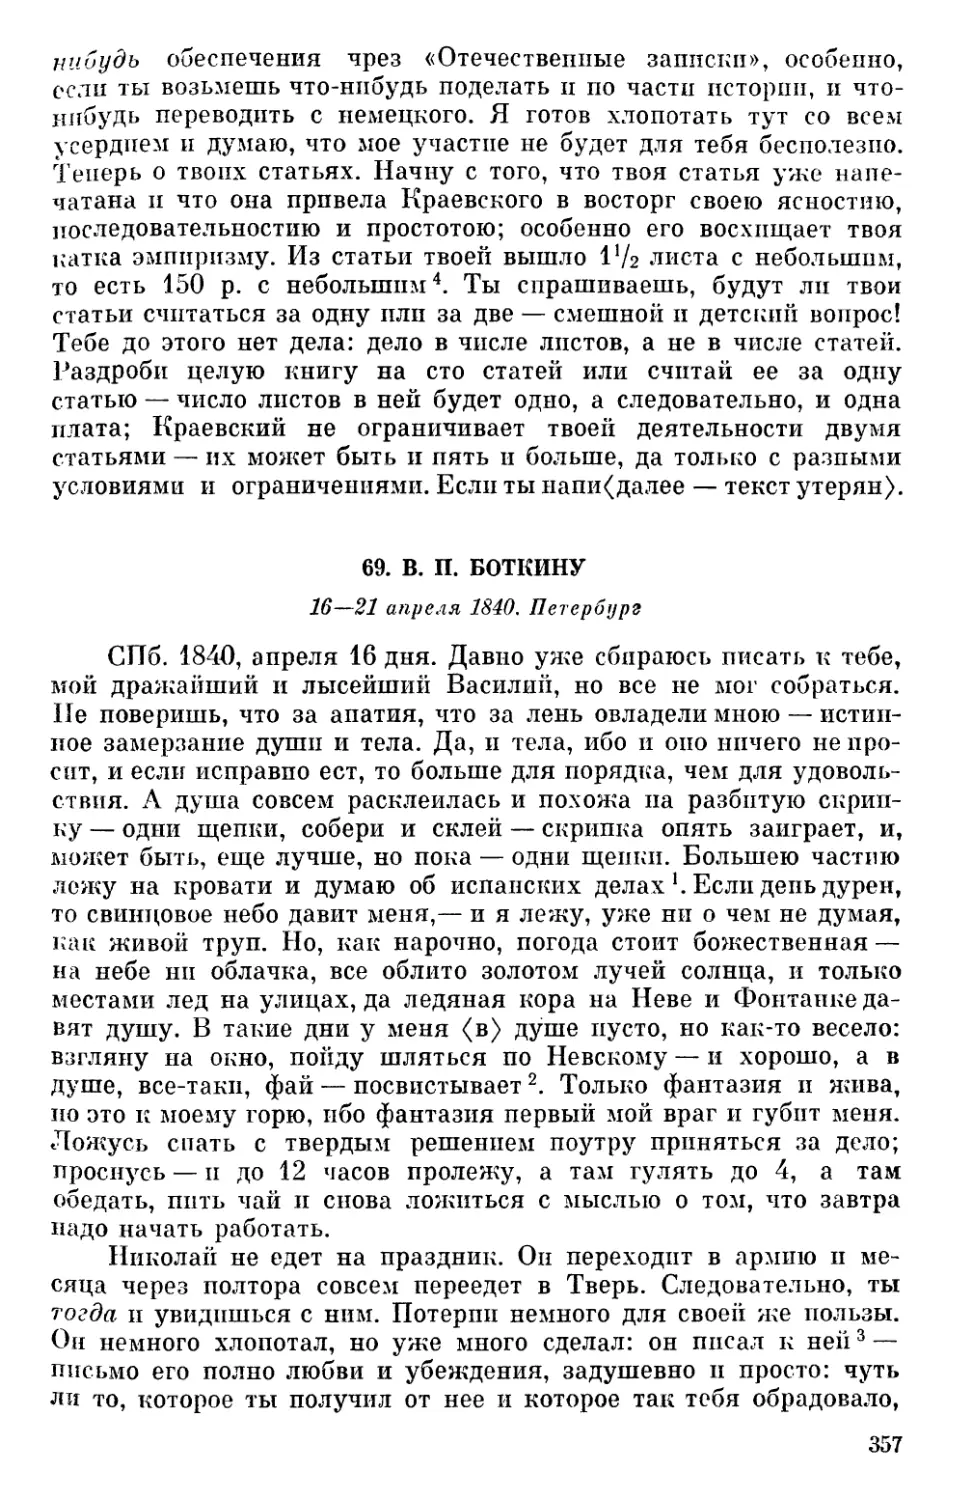 69. В. П. Боткину. 16—21 апреля 1840